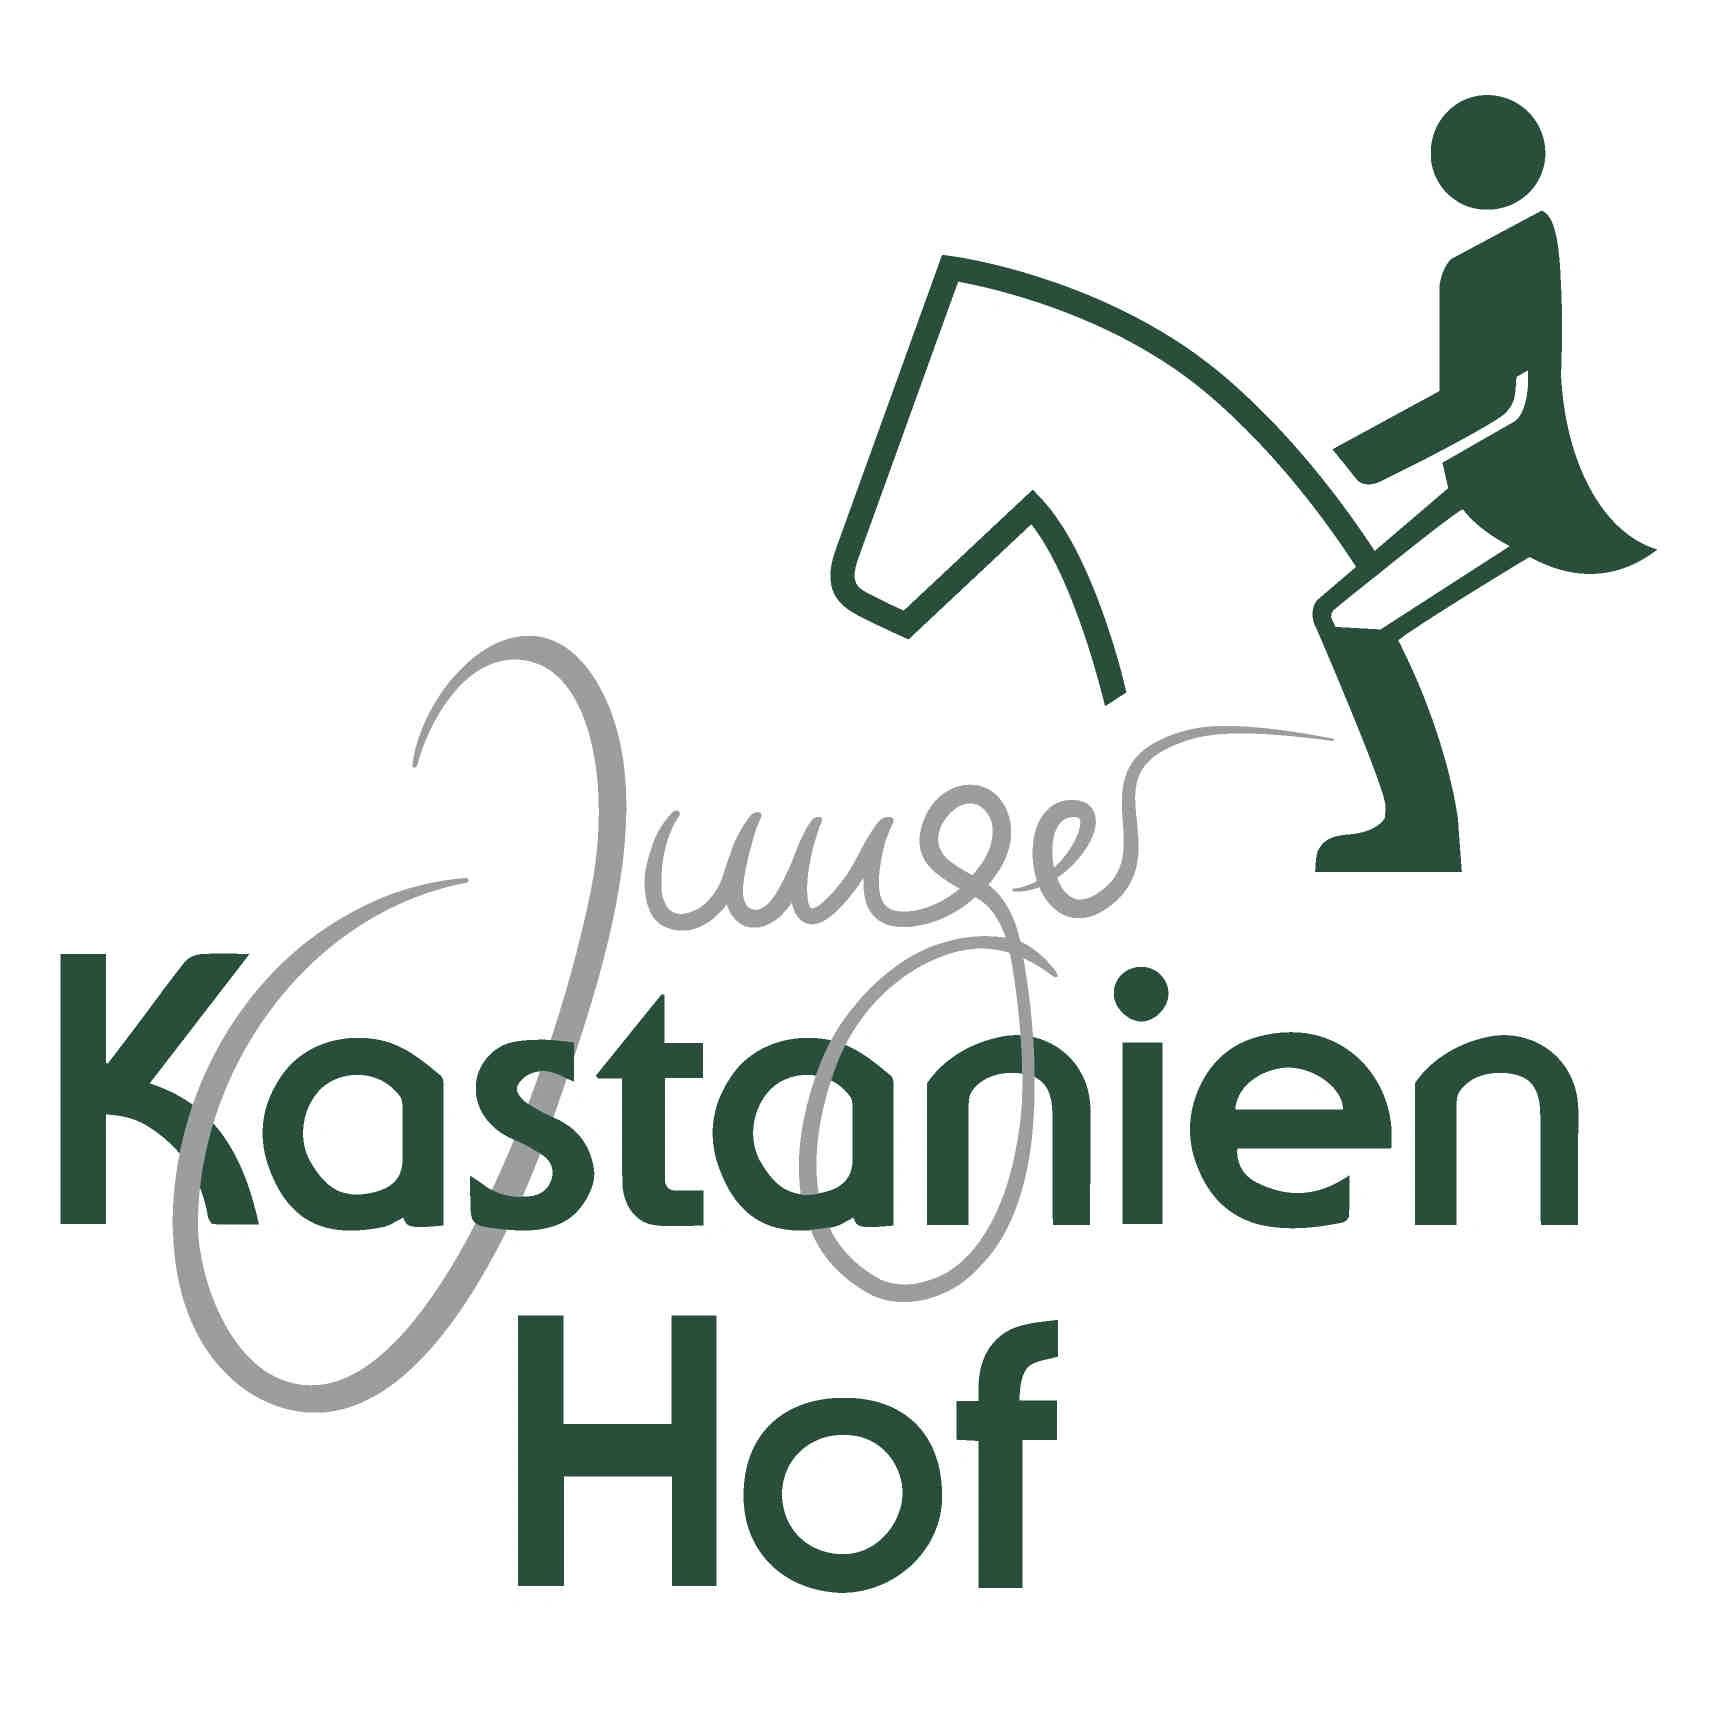 (c) Kastanien-hof.de